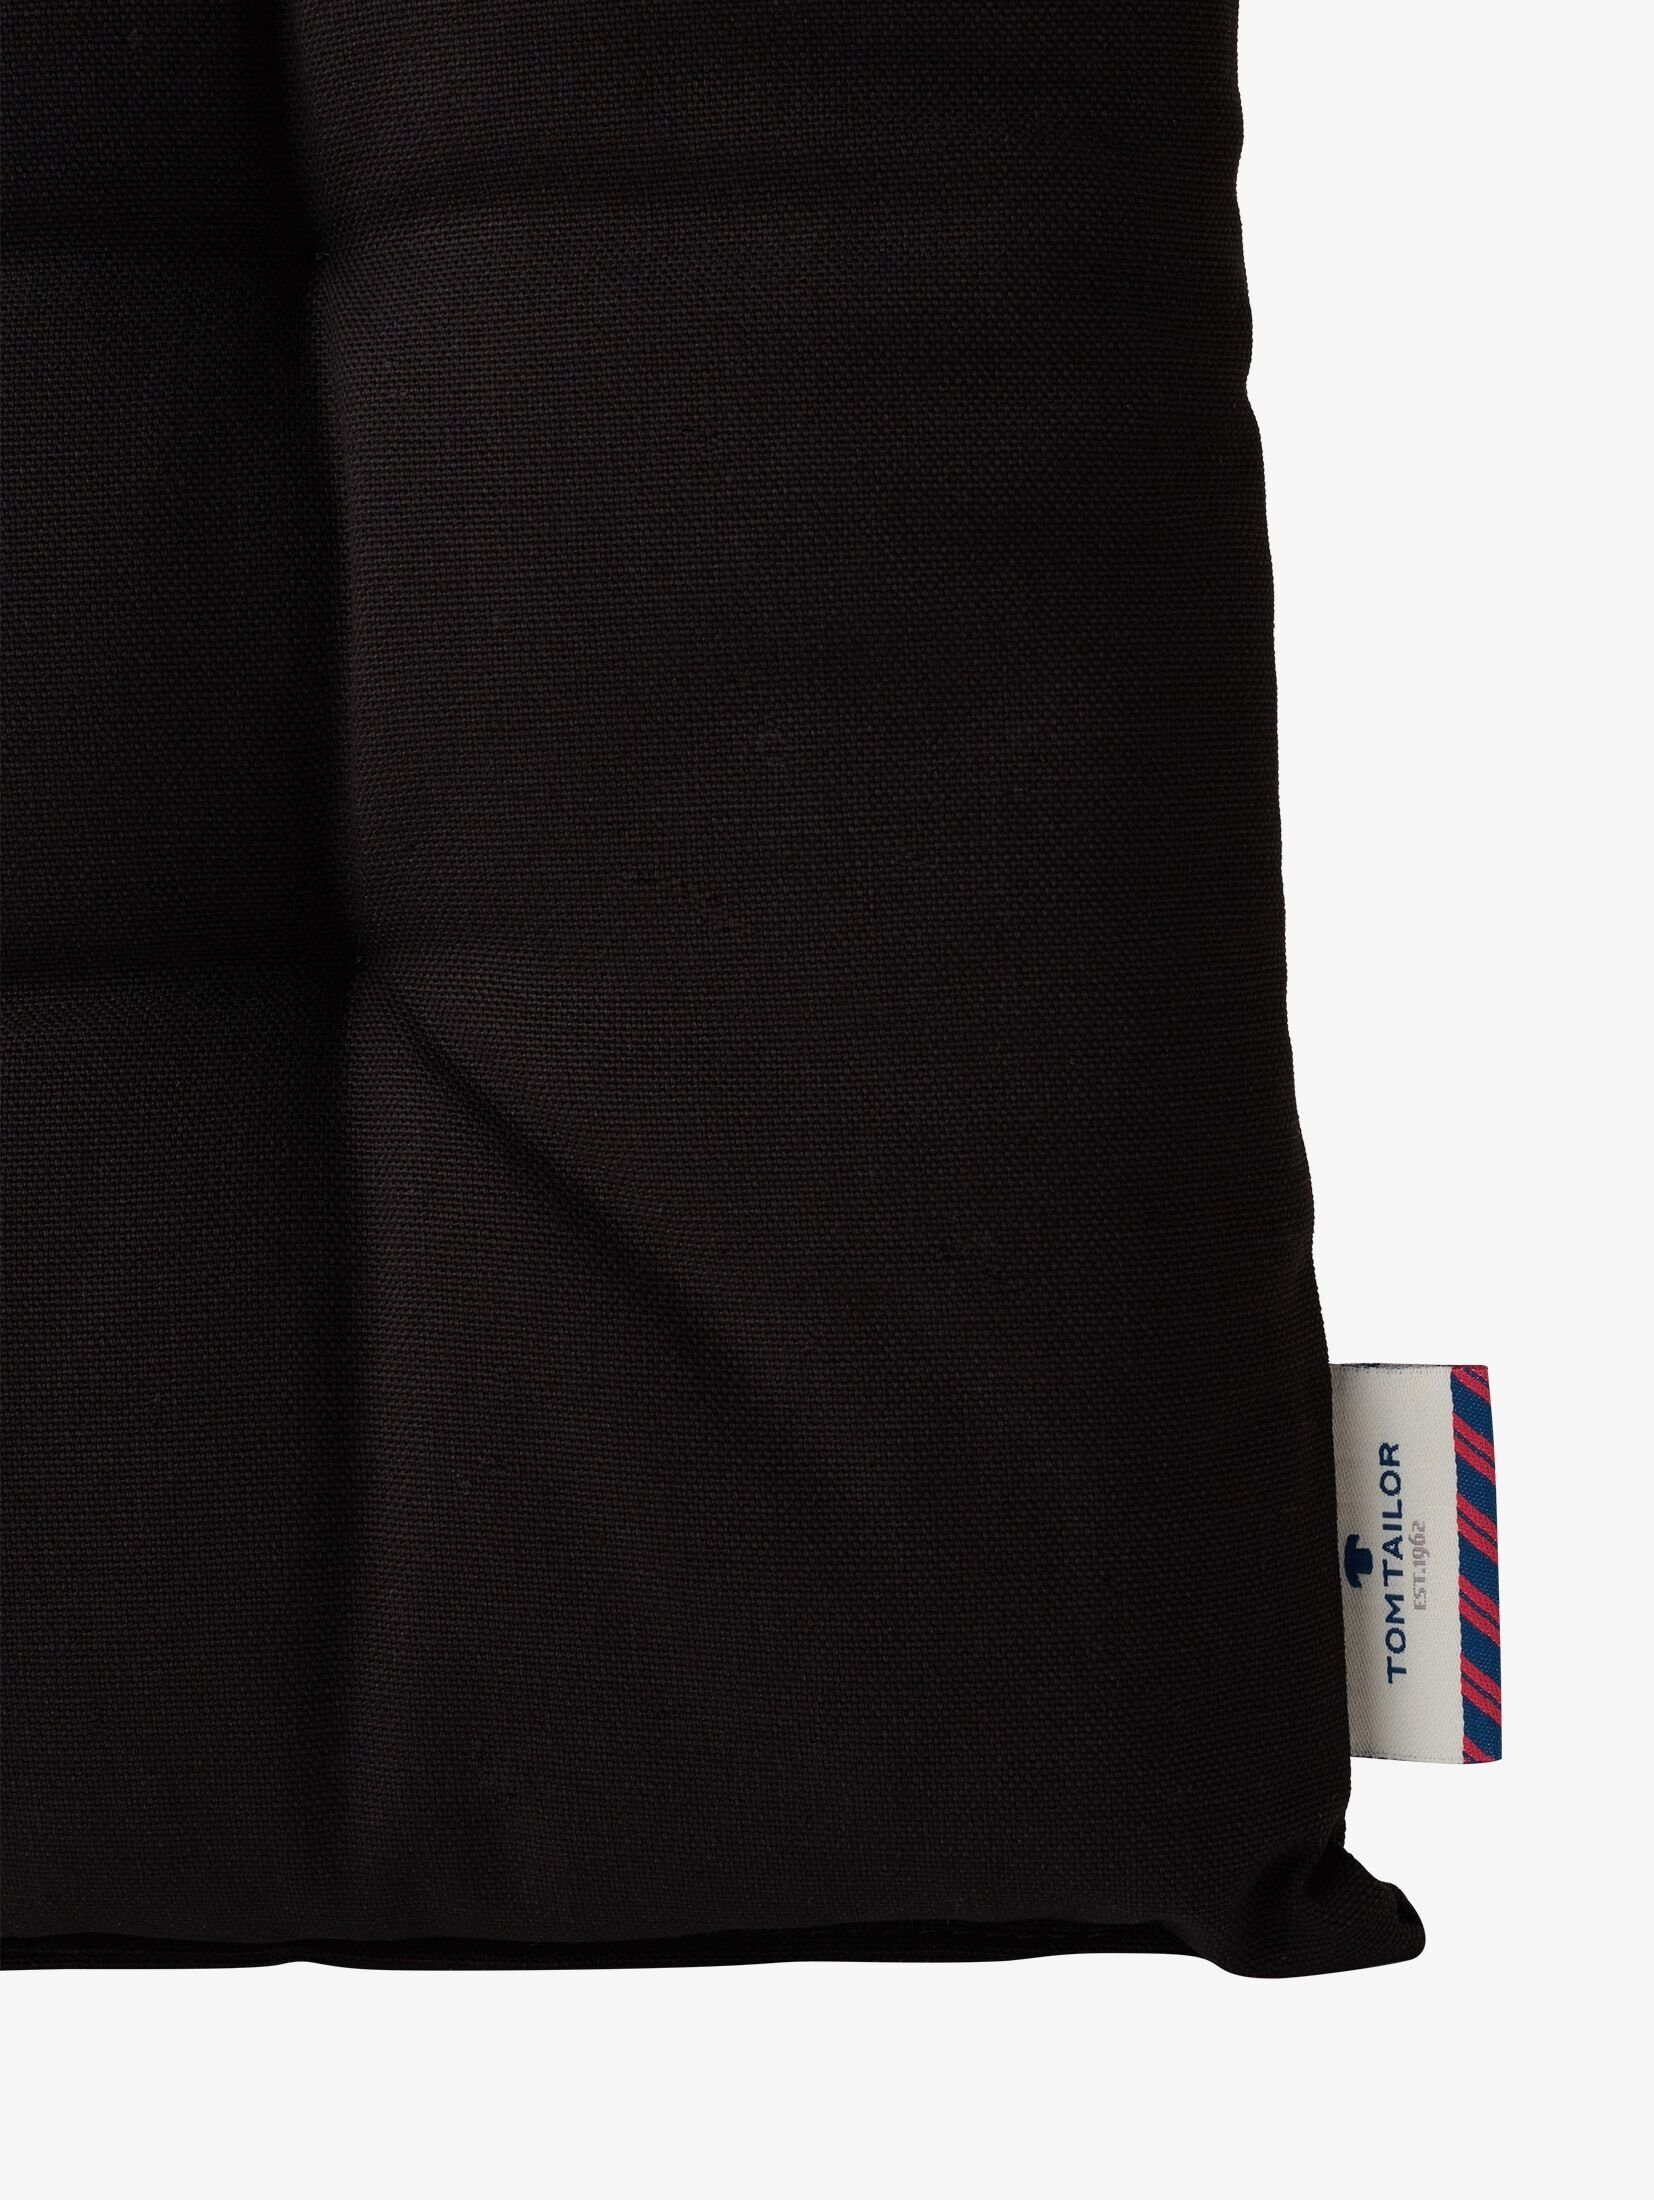 Kissenbezug Unifarbenes Sitzkissen im 2er TAILOR Pack, TOM schwarz